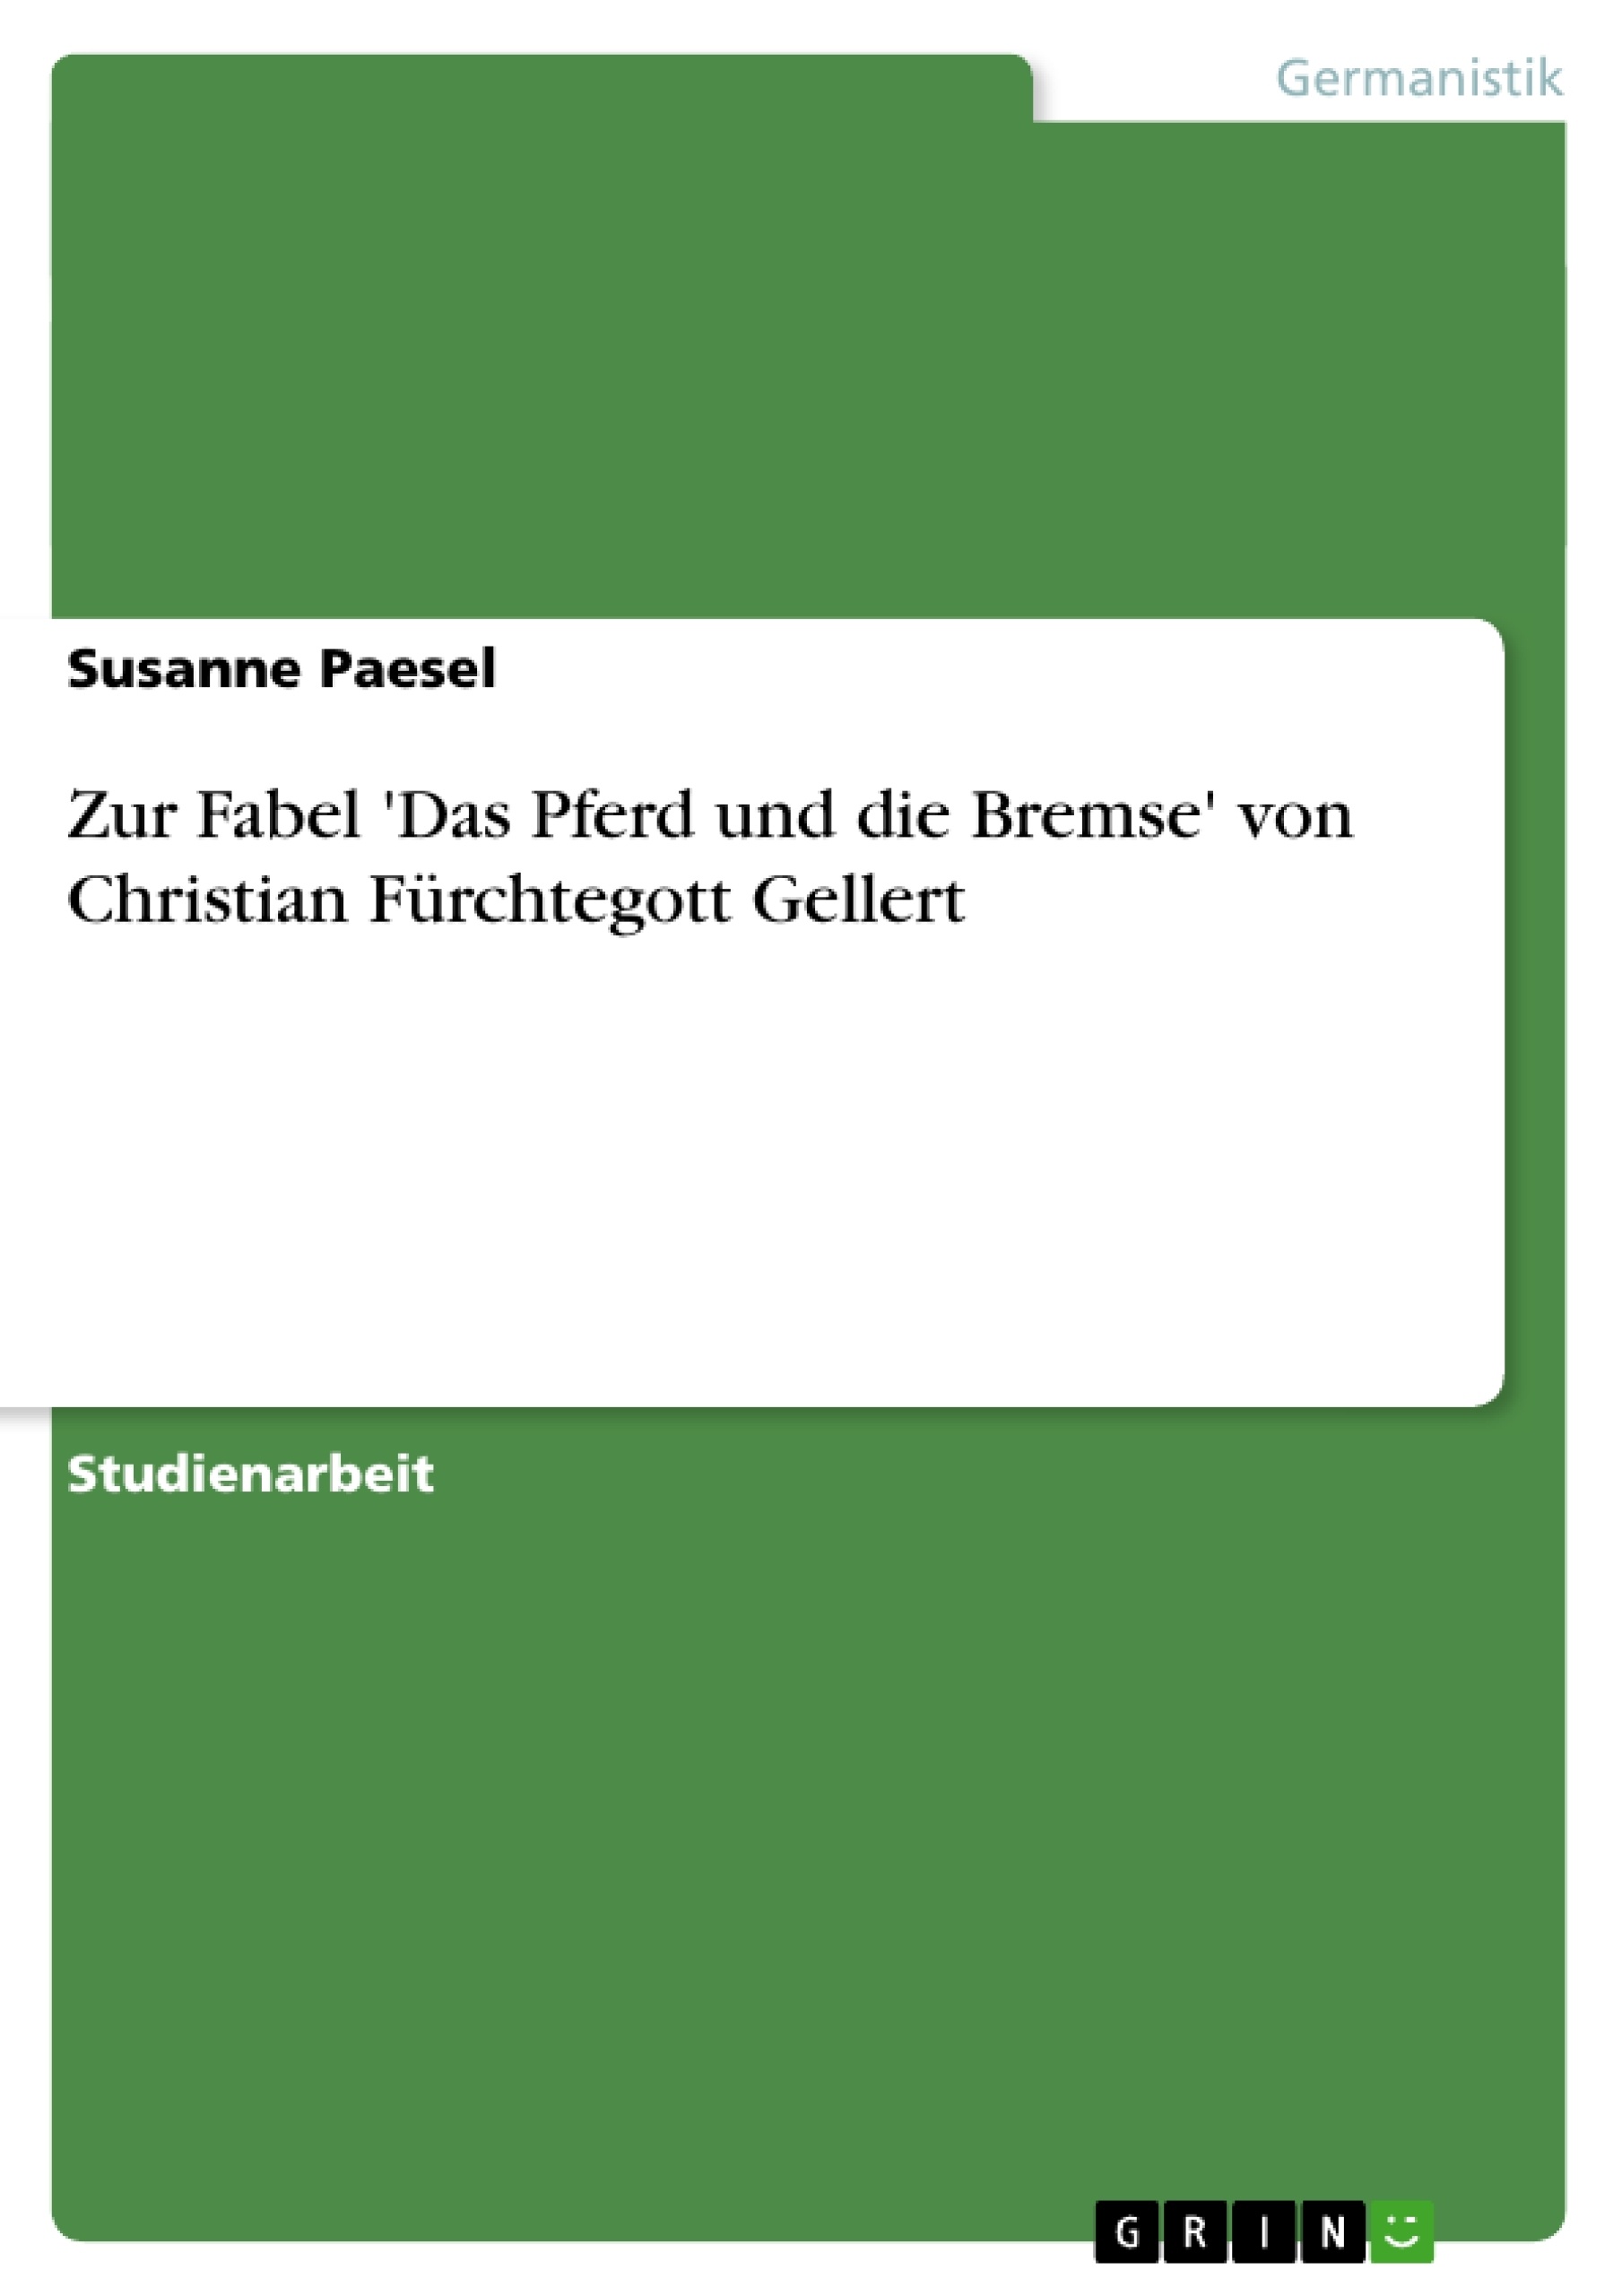 Titre: Zur Fabel 'Das Pferd und die Bremse' von Christian Fürchtegott Gellert